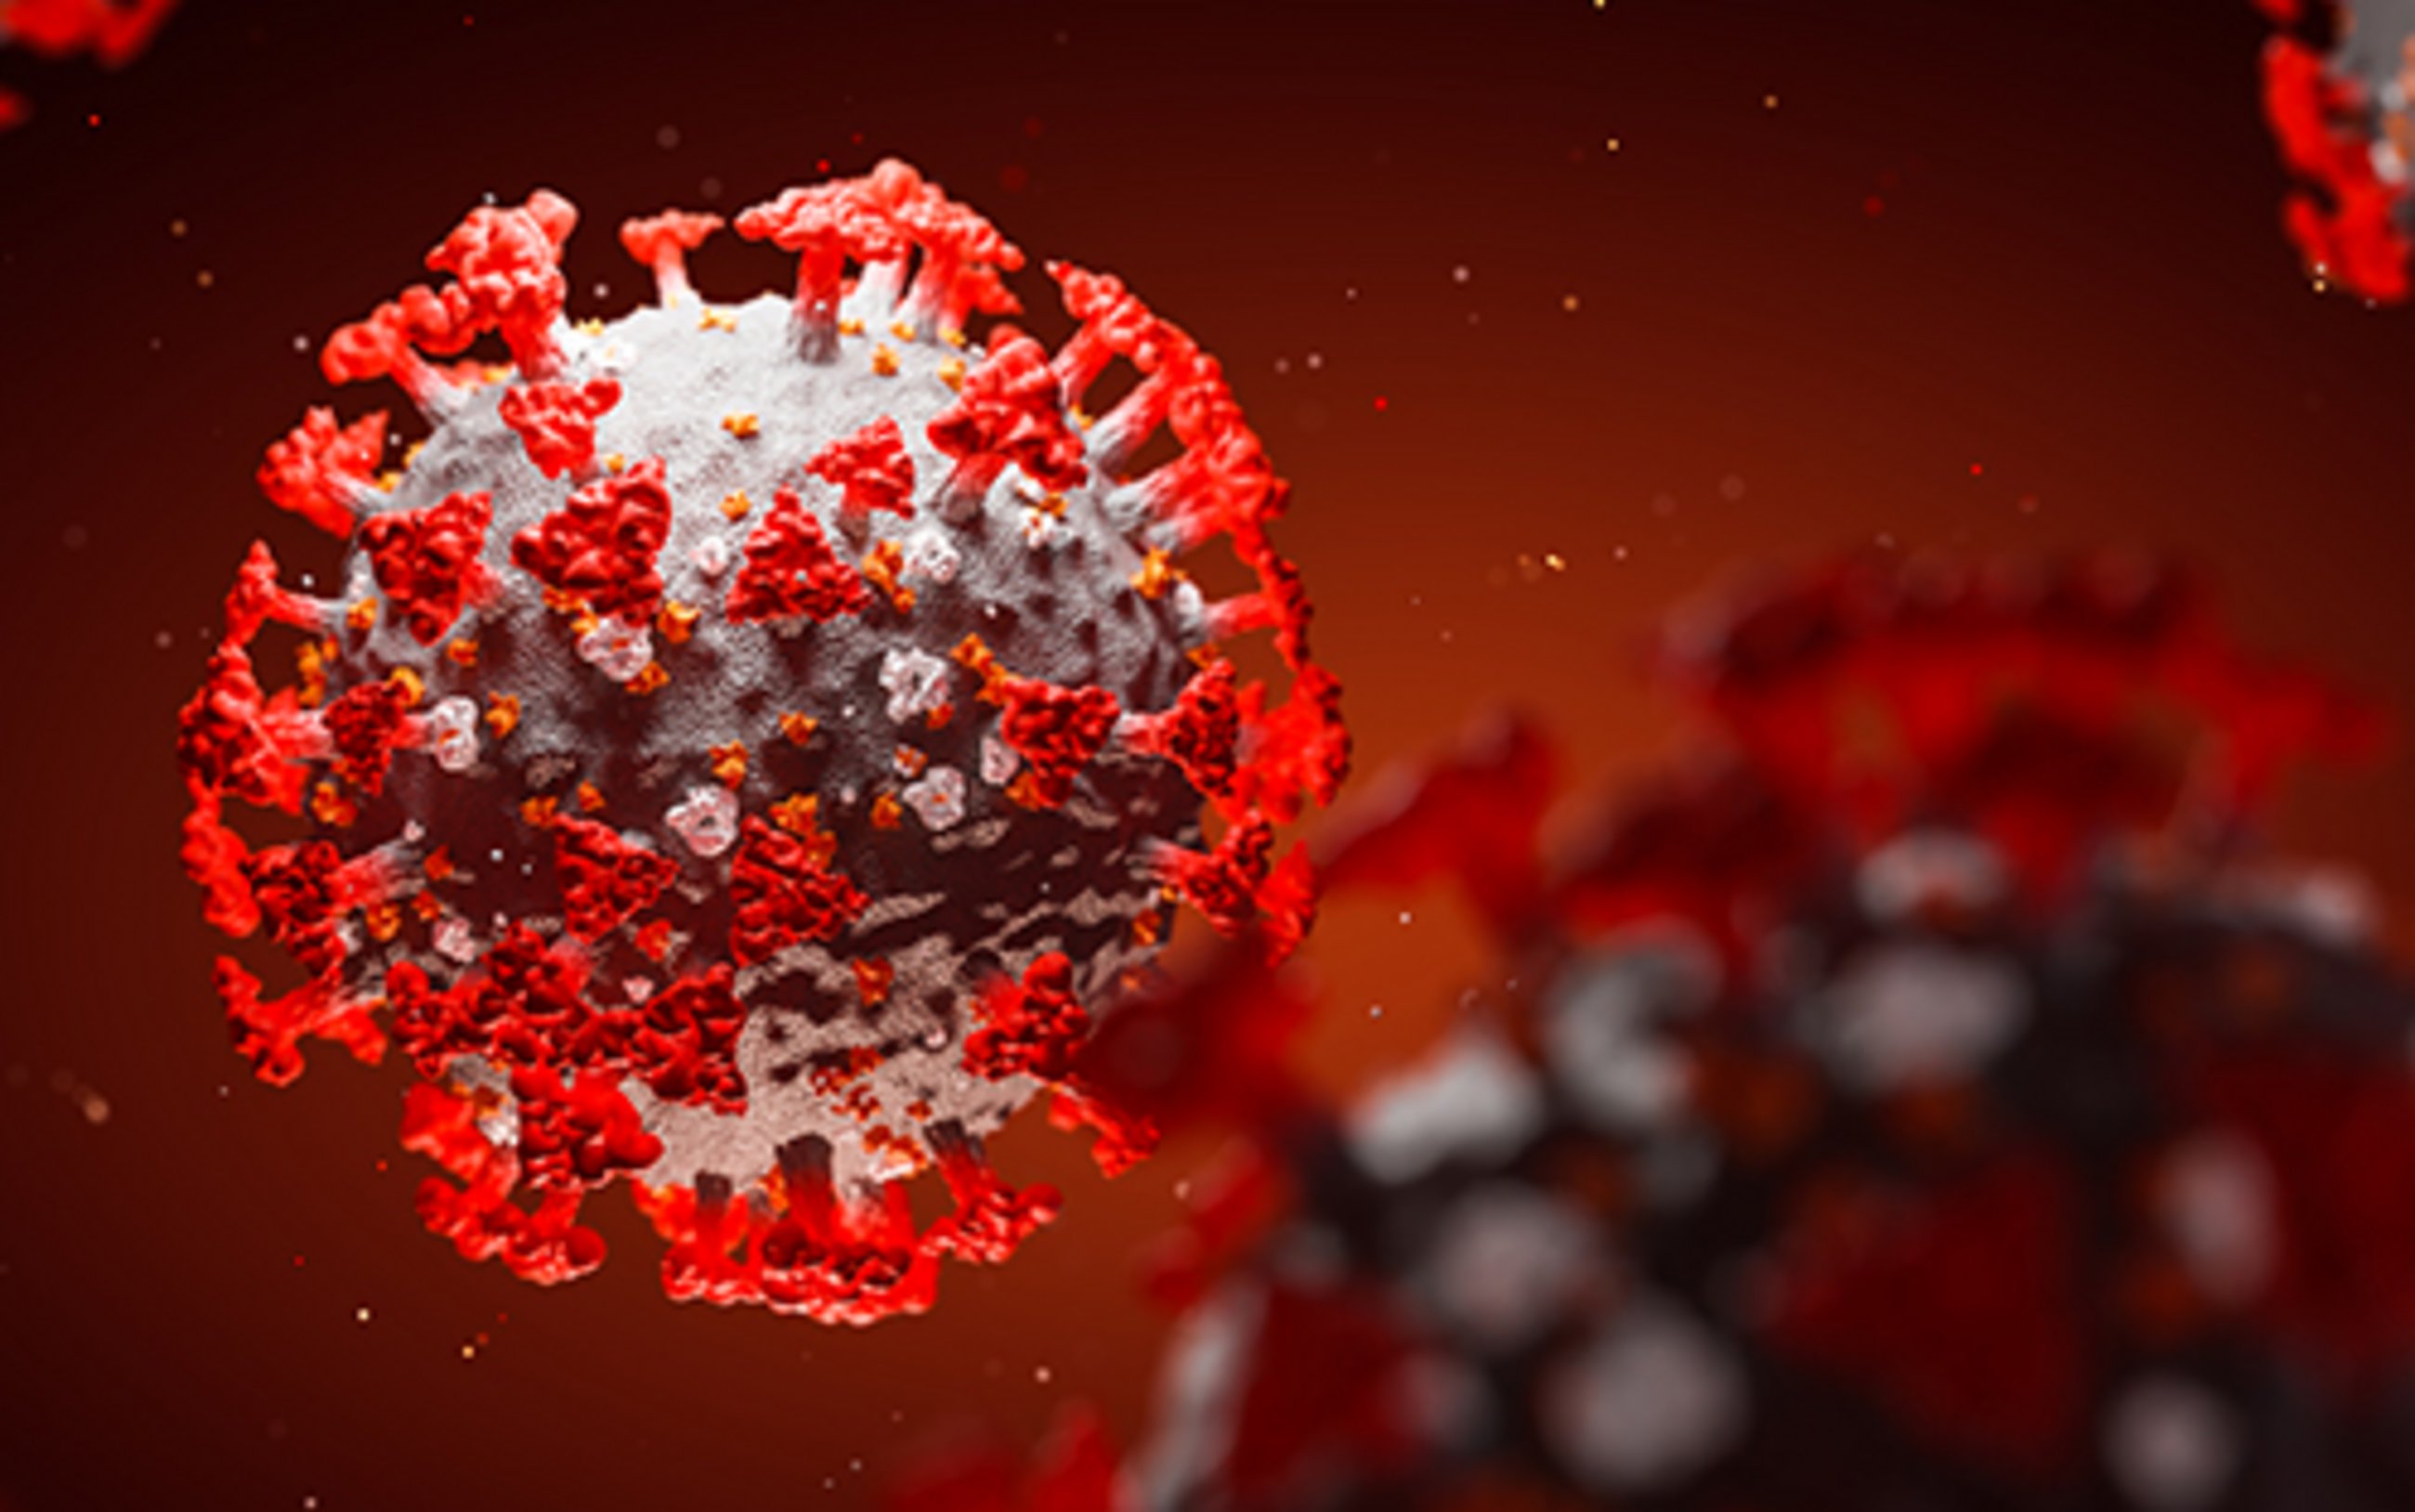 Quelles sont les populations les plus touchées par le coronavirus ? – Analyse des statistiques